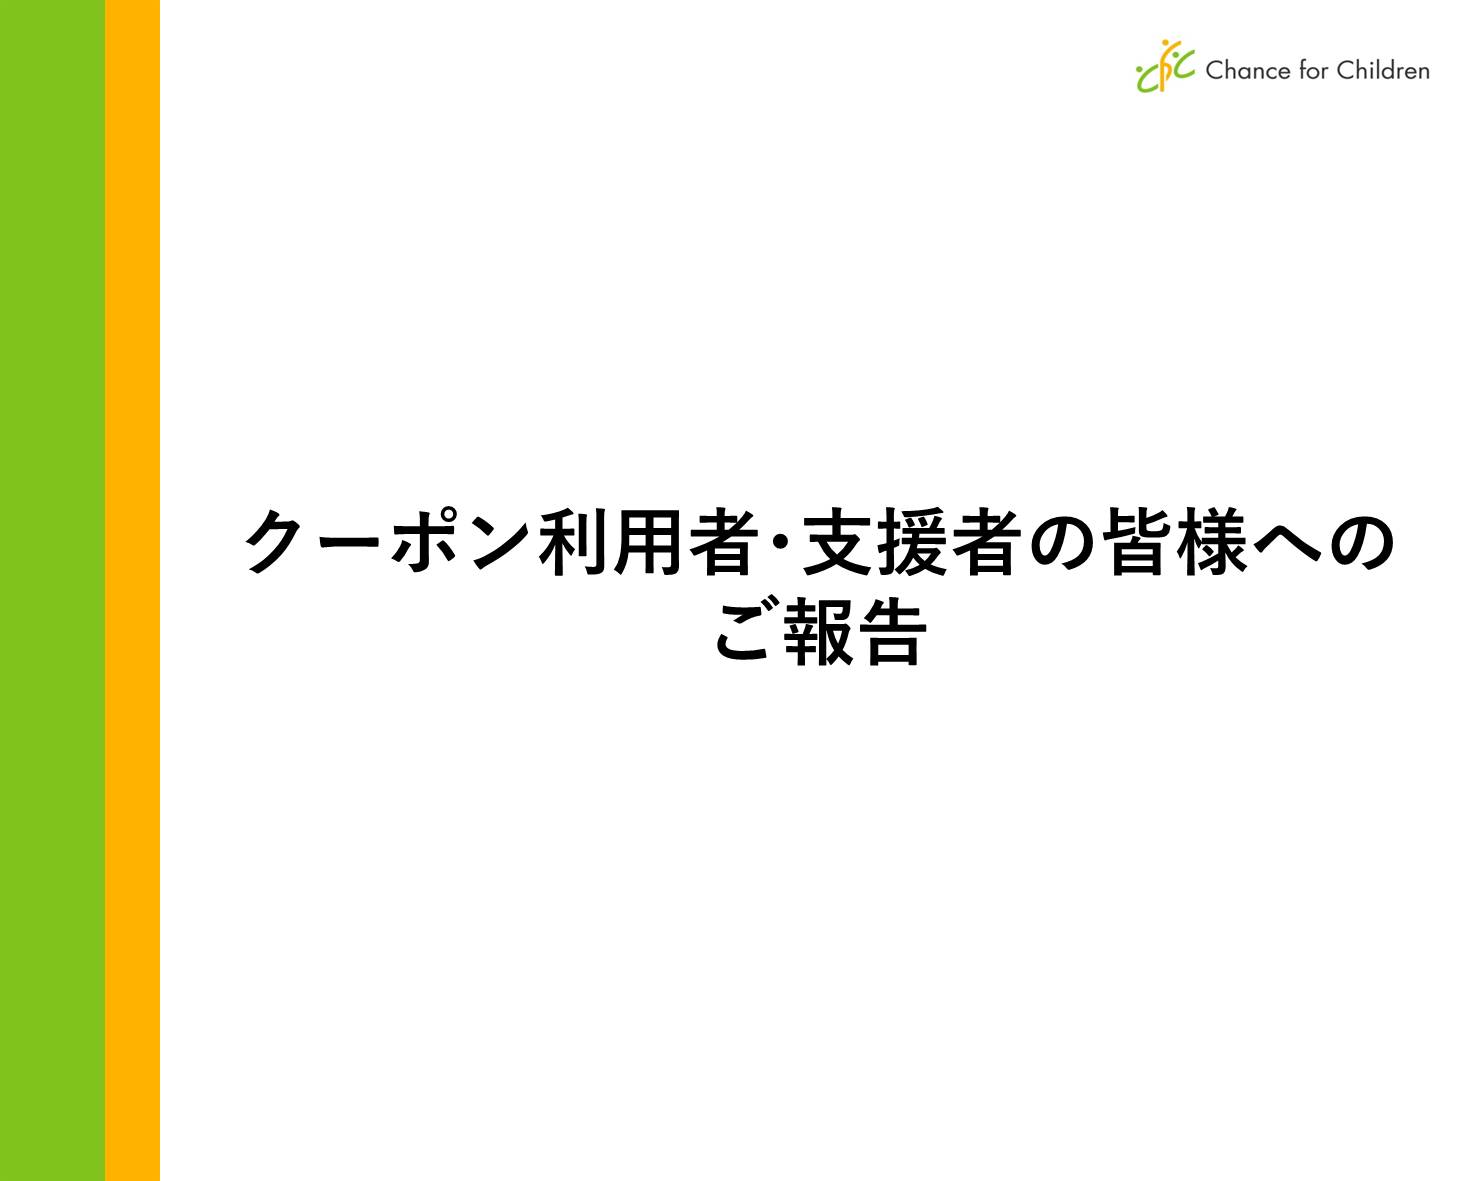 2018年度CFC東日本新規クーポン利用者審査不備及びクーポン追加提供に関するご報告【10月19日追記】